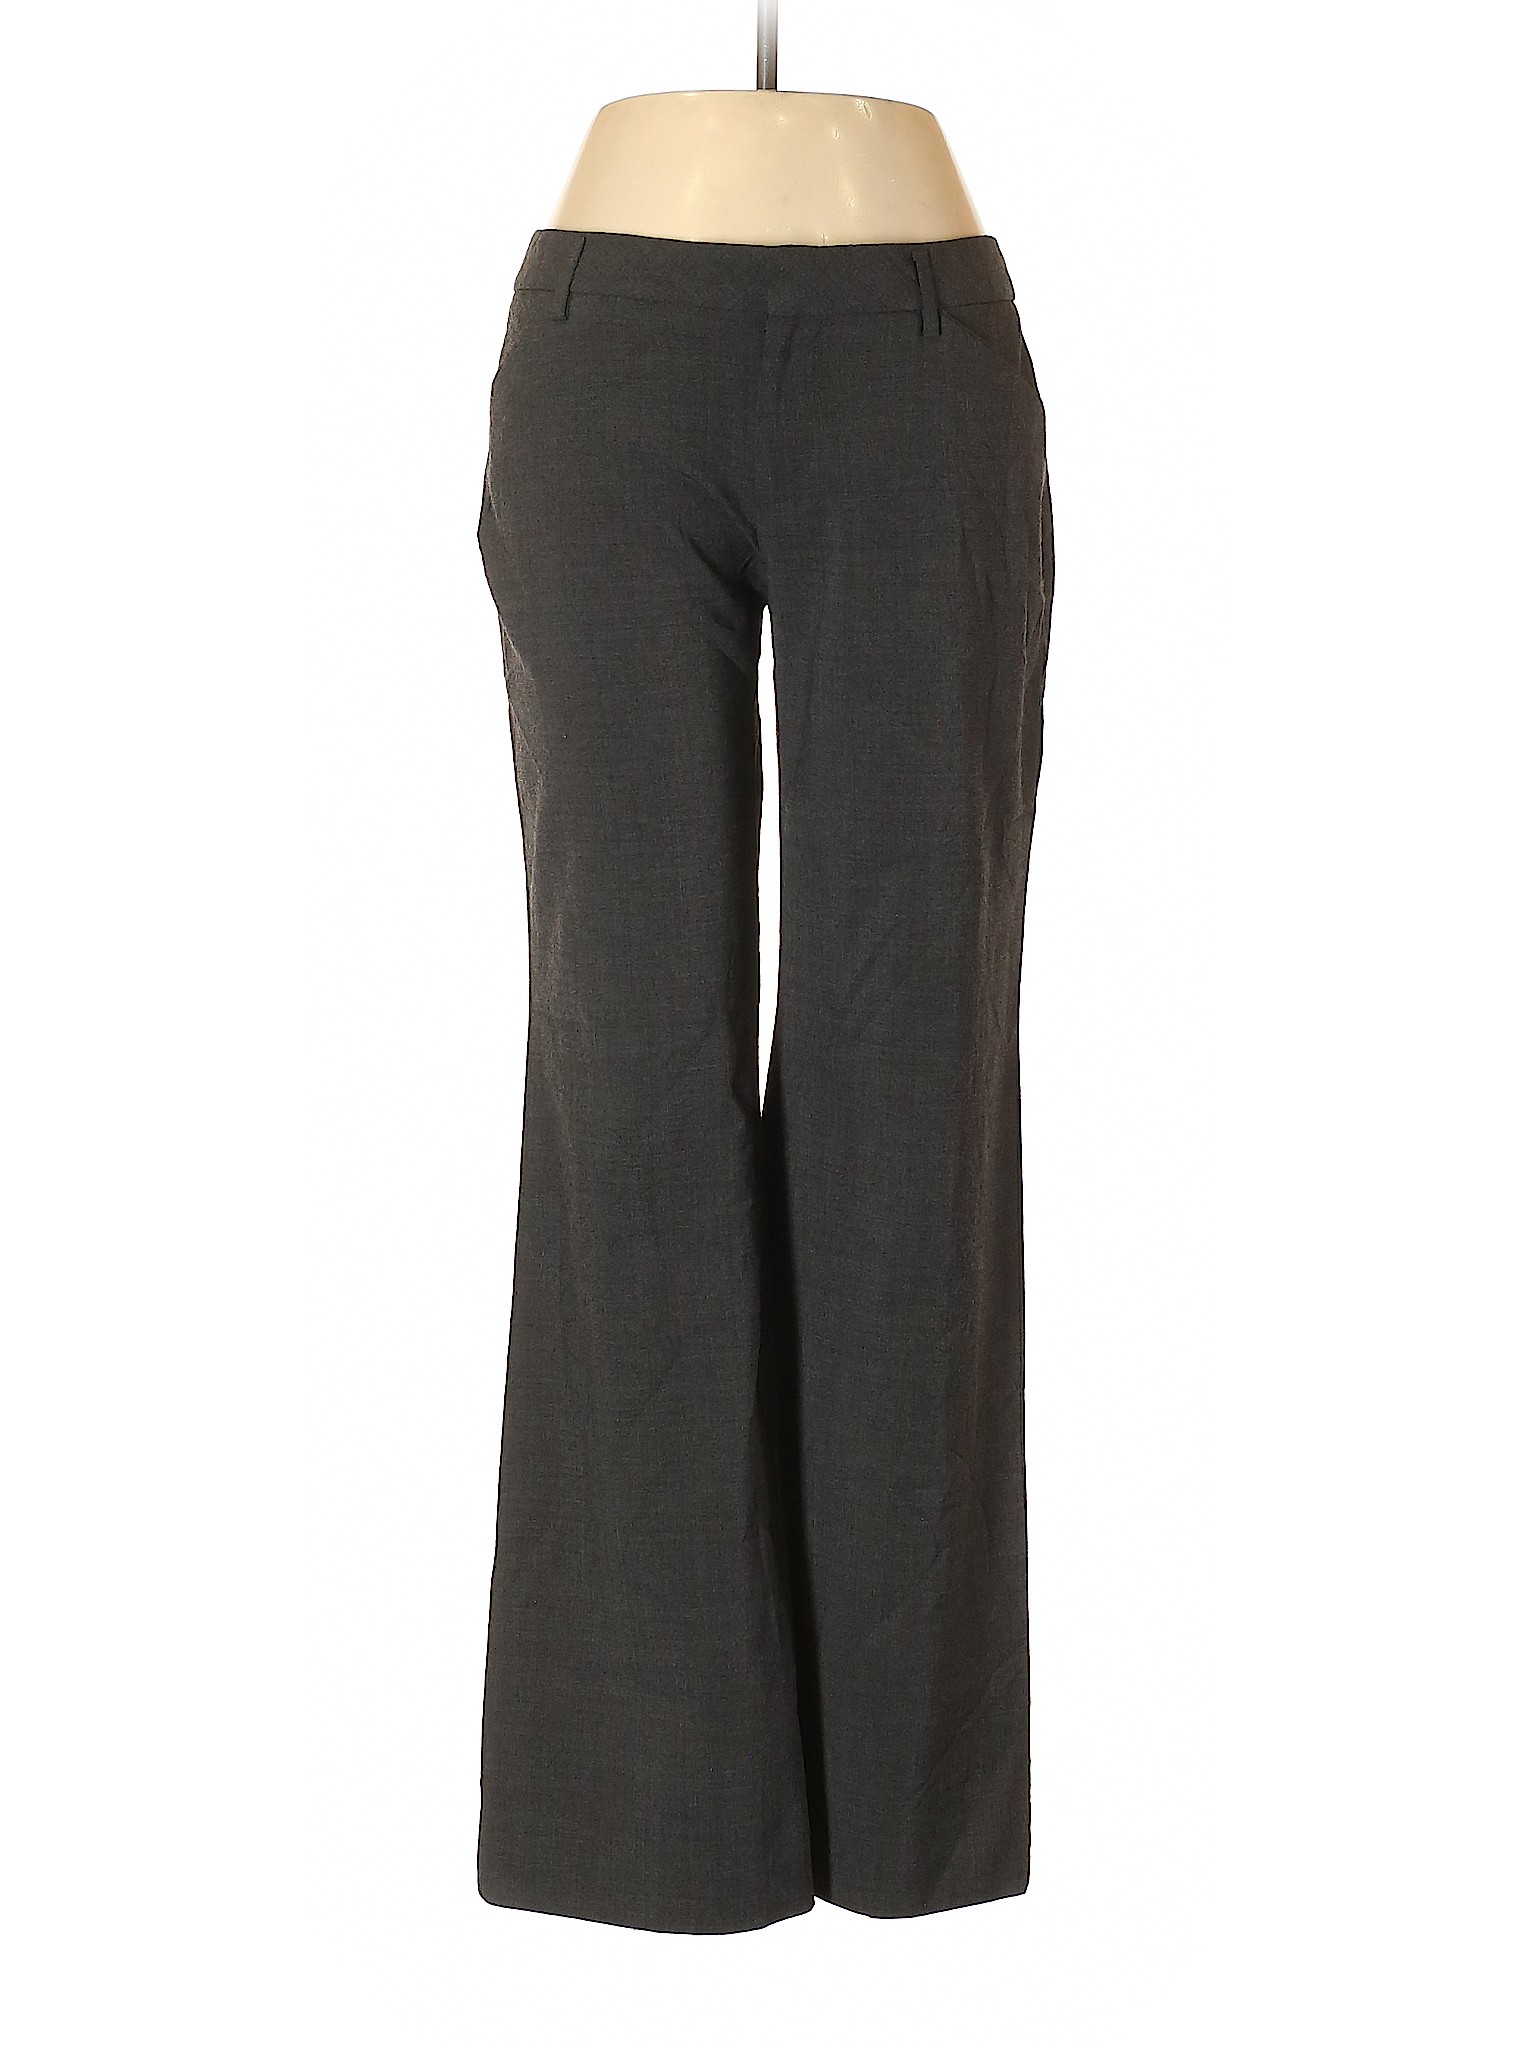 Gap Women Gray Dress Pants 2 | eBay